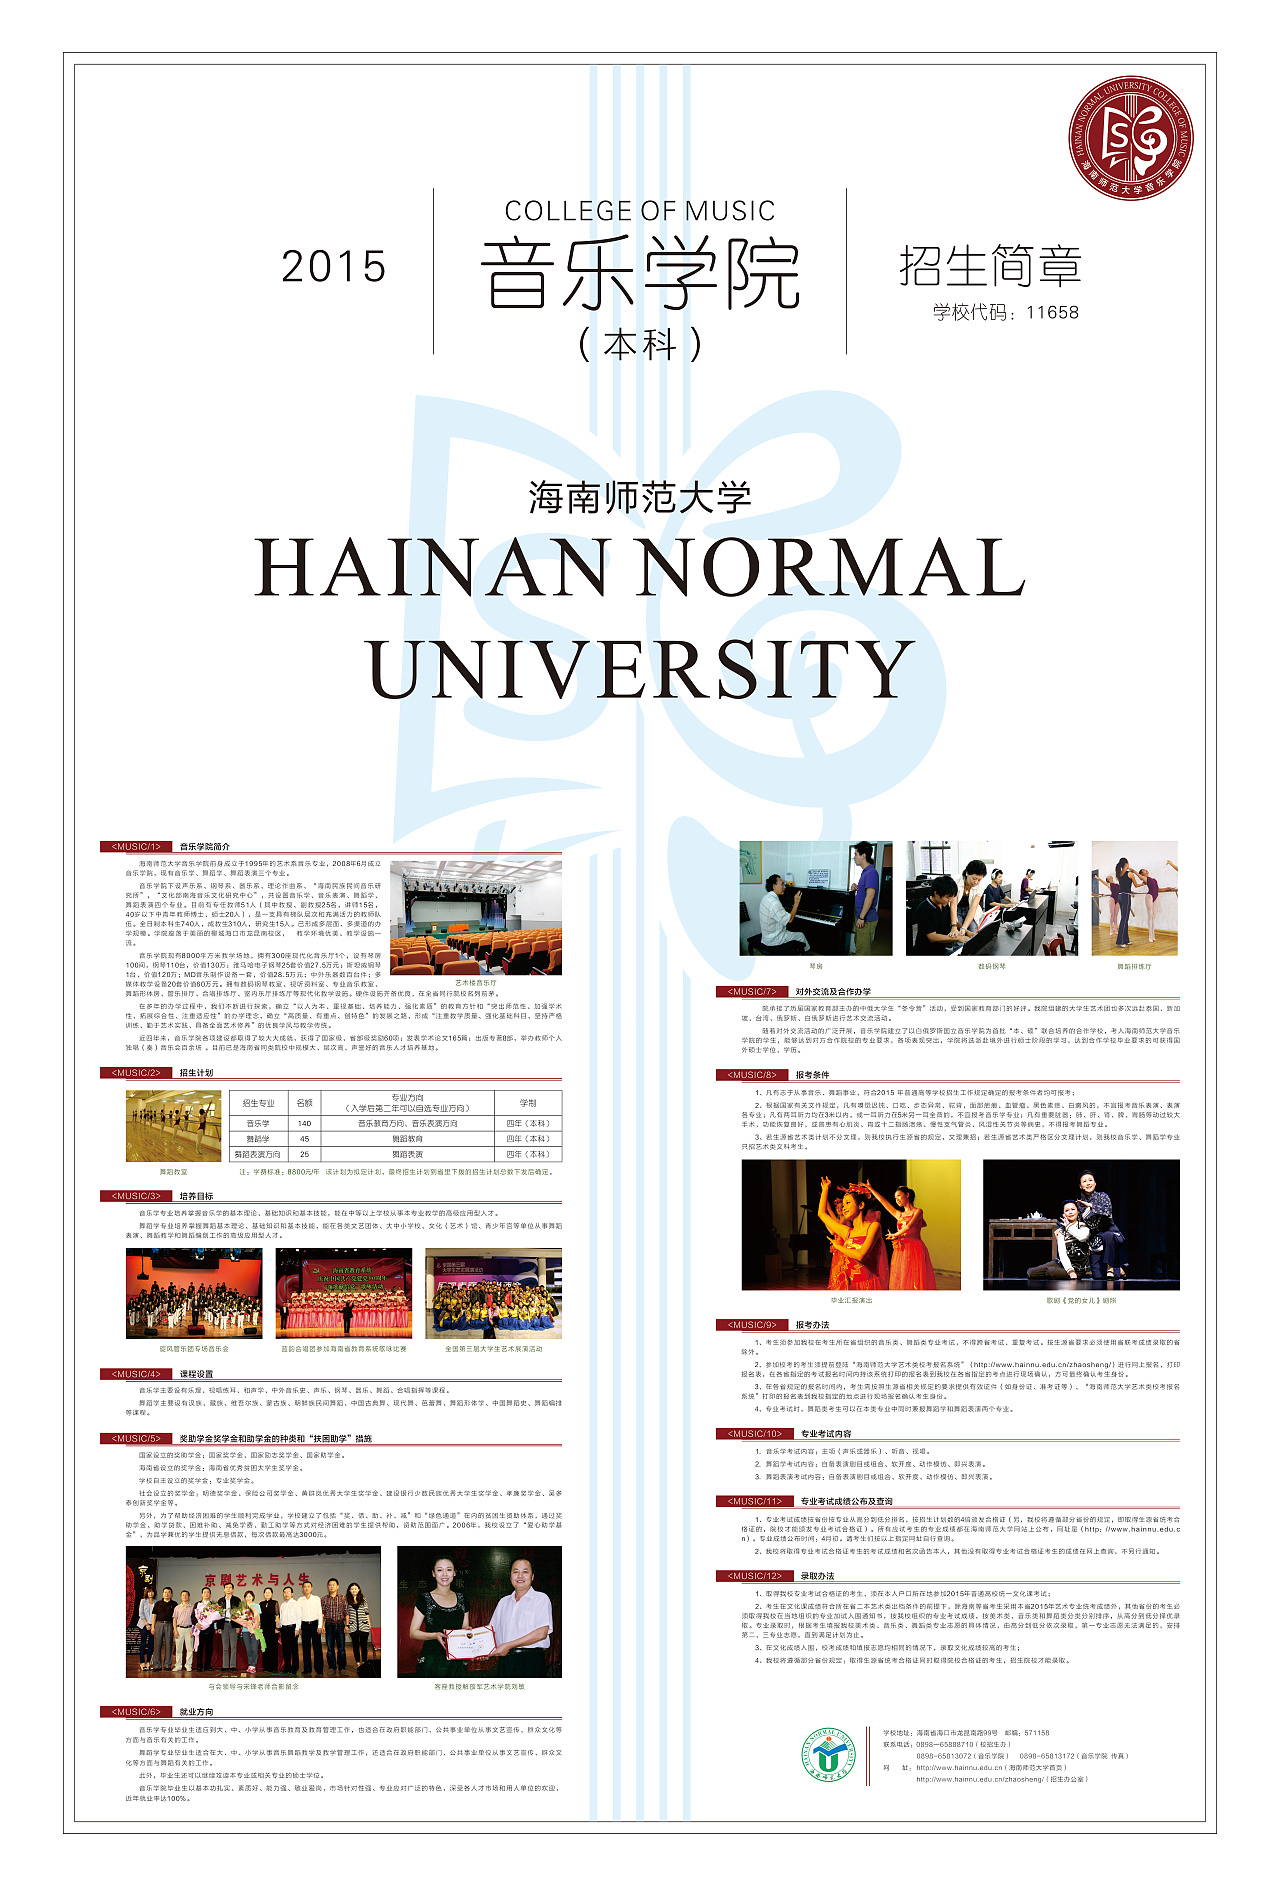 海南师范大学音乐学院2015年招生简章、海报